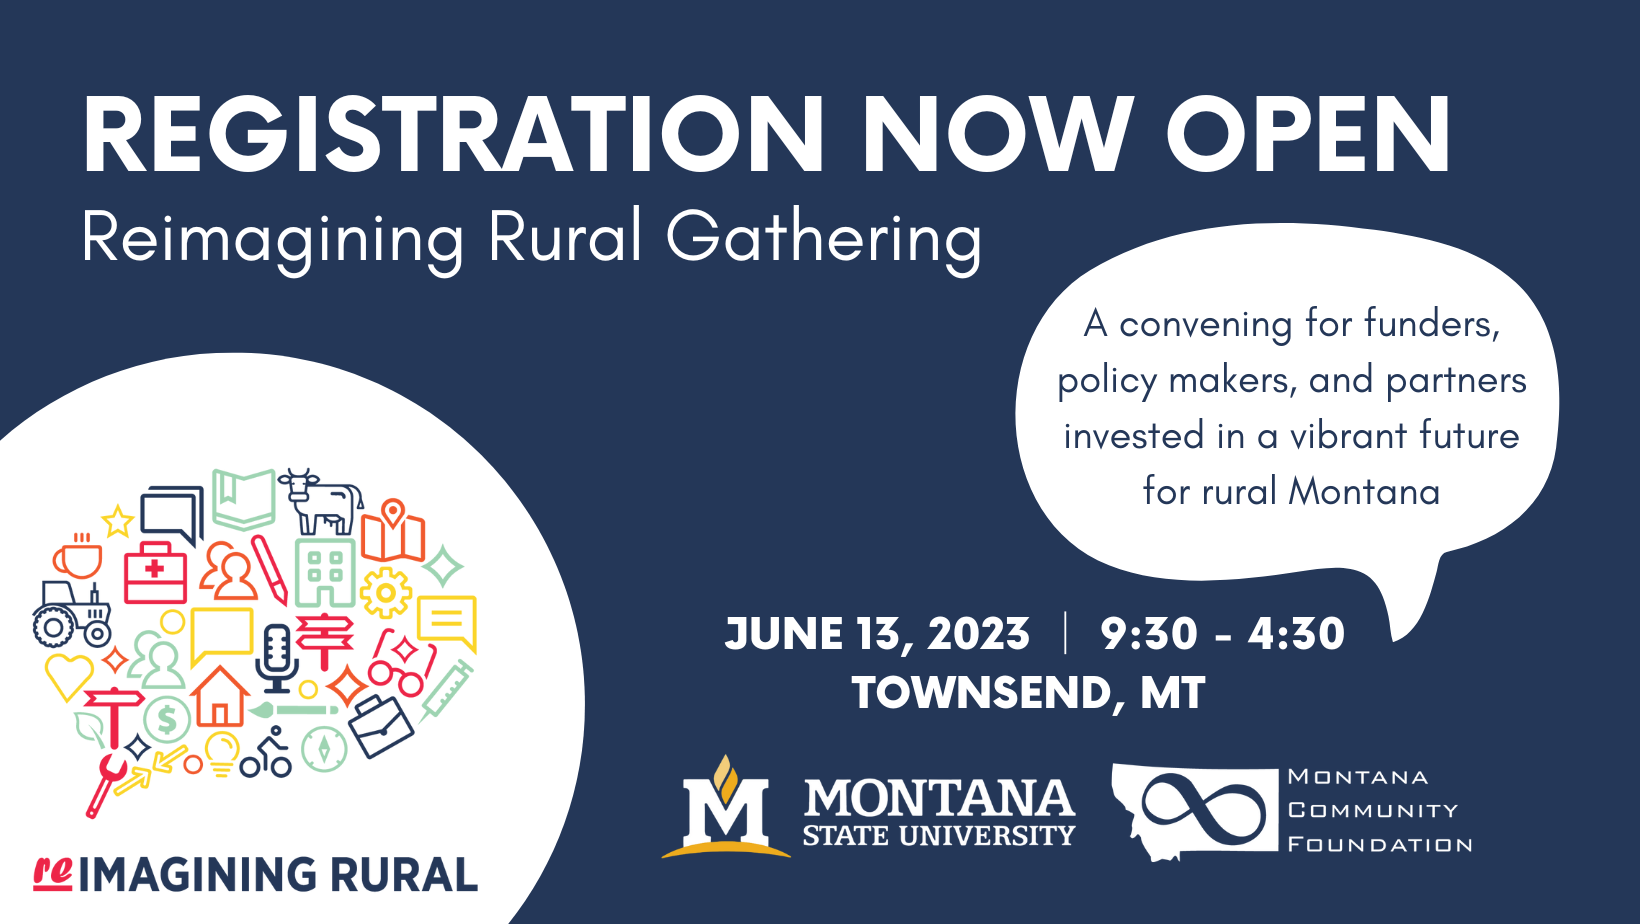 Reimagining Rural Gathering Registration open image